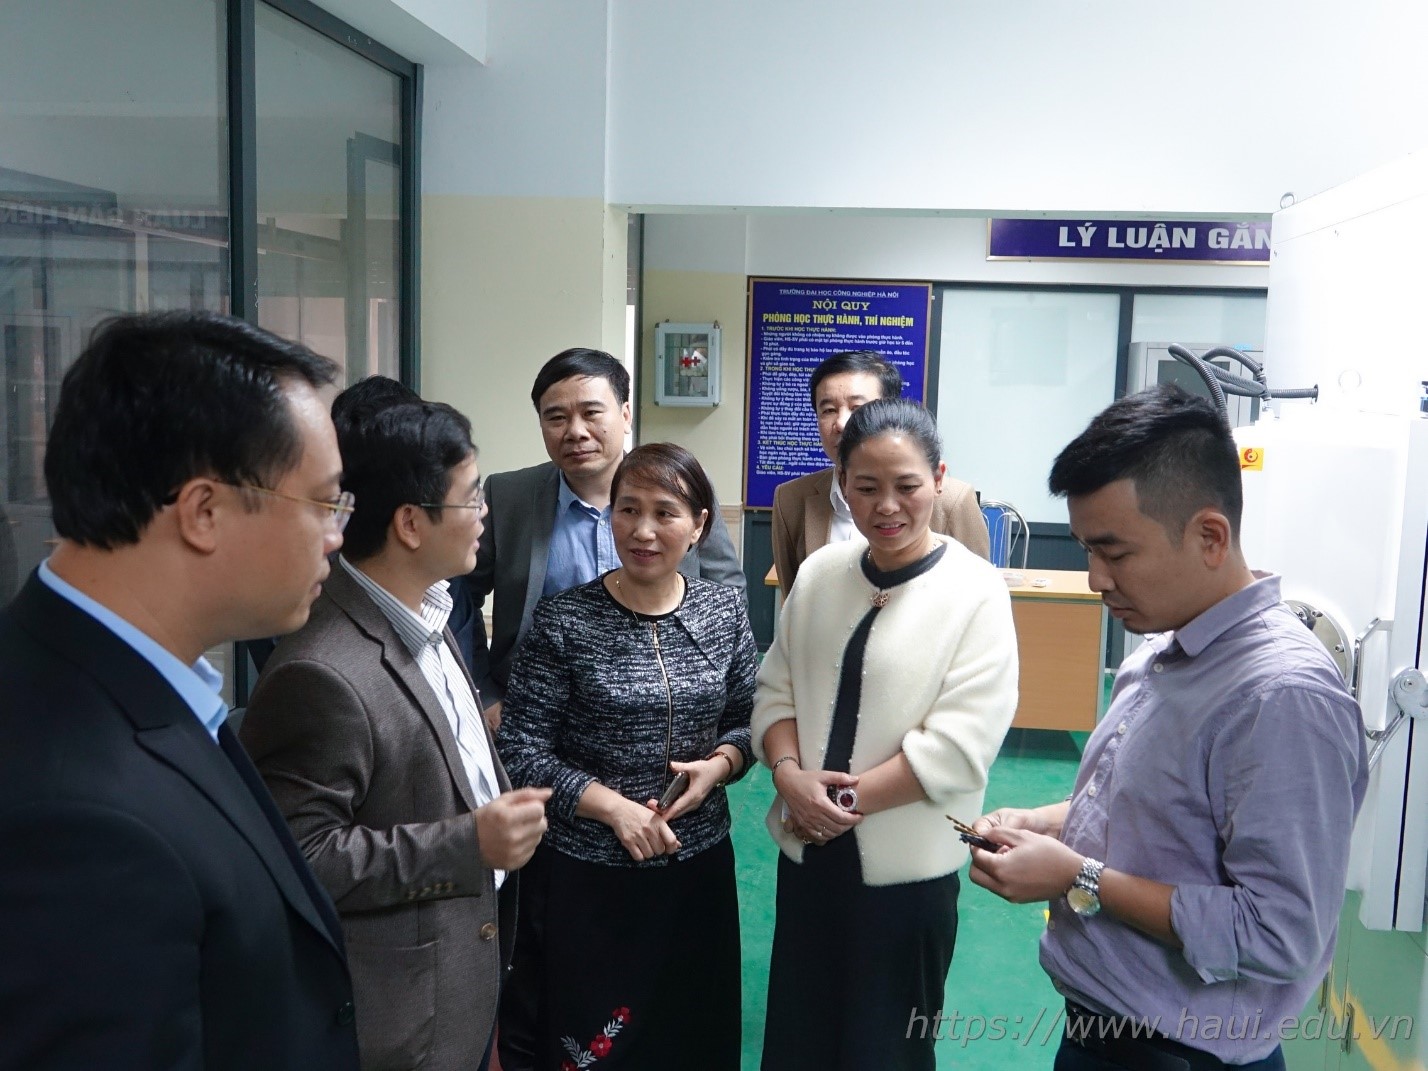 Đoàn Trường Cao đẳng Y tế Thái Bình thăm và làm việc tại Đại học Công nghiệp Hà Nội